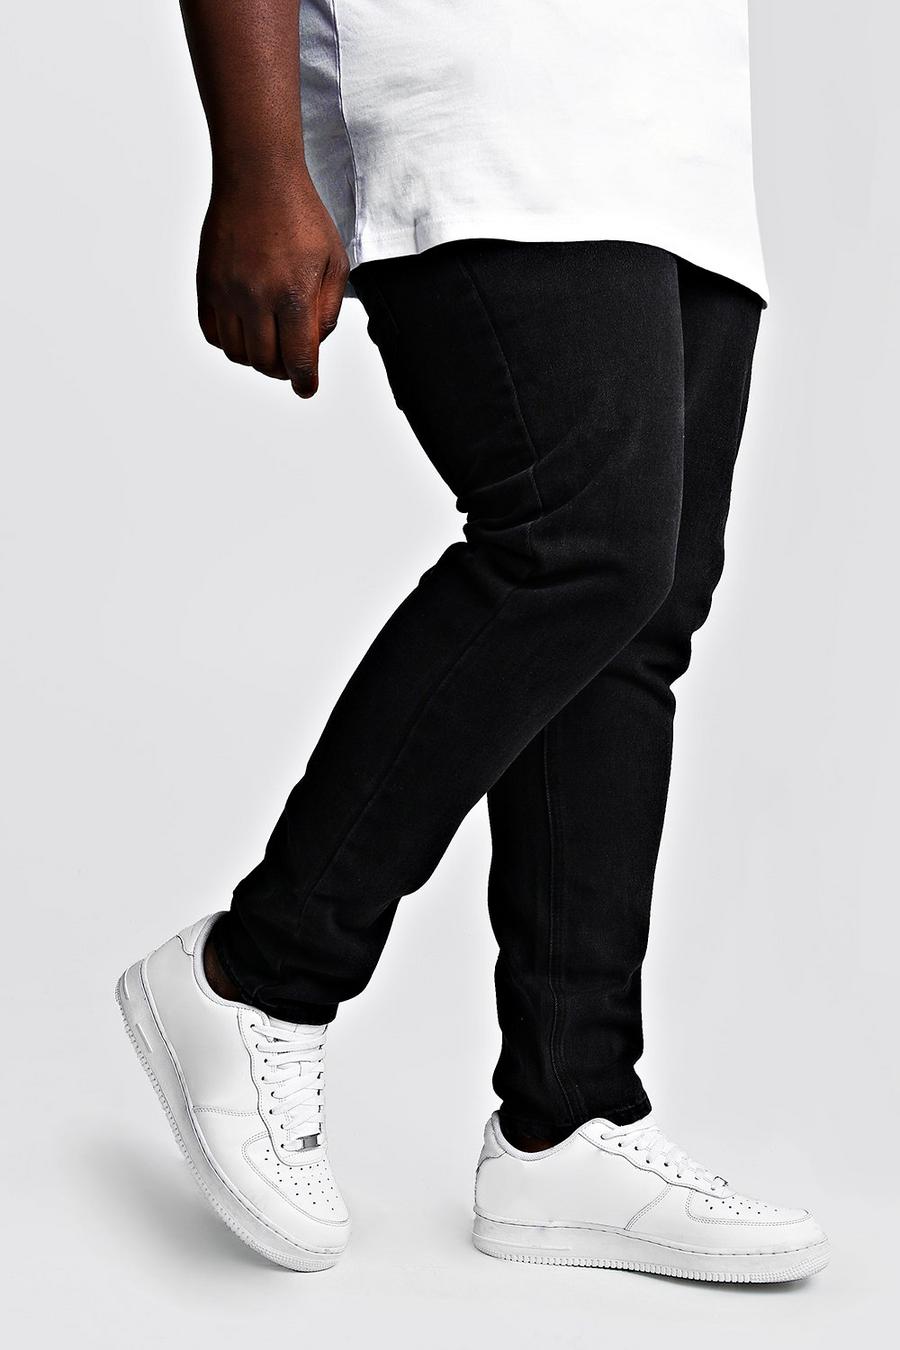 שחור דהוי מכנסי ג'ינס קשיחים בגזרה צרה לגברים גדולים וגבוהים image number 1